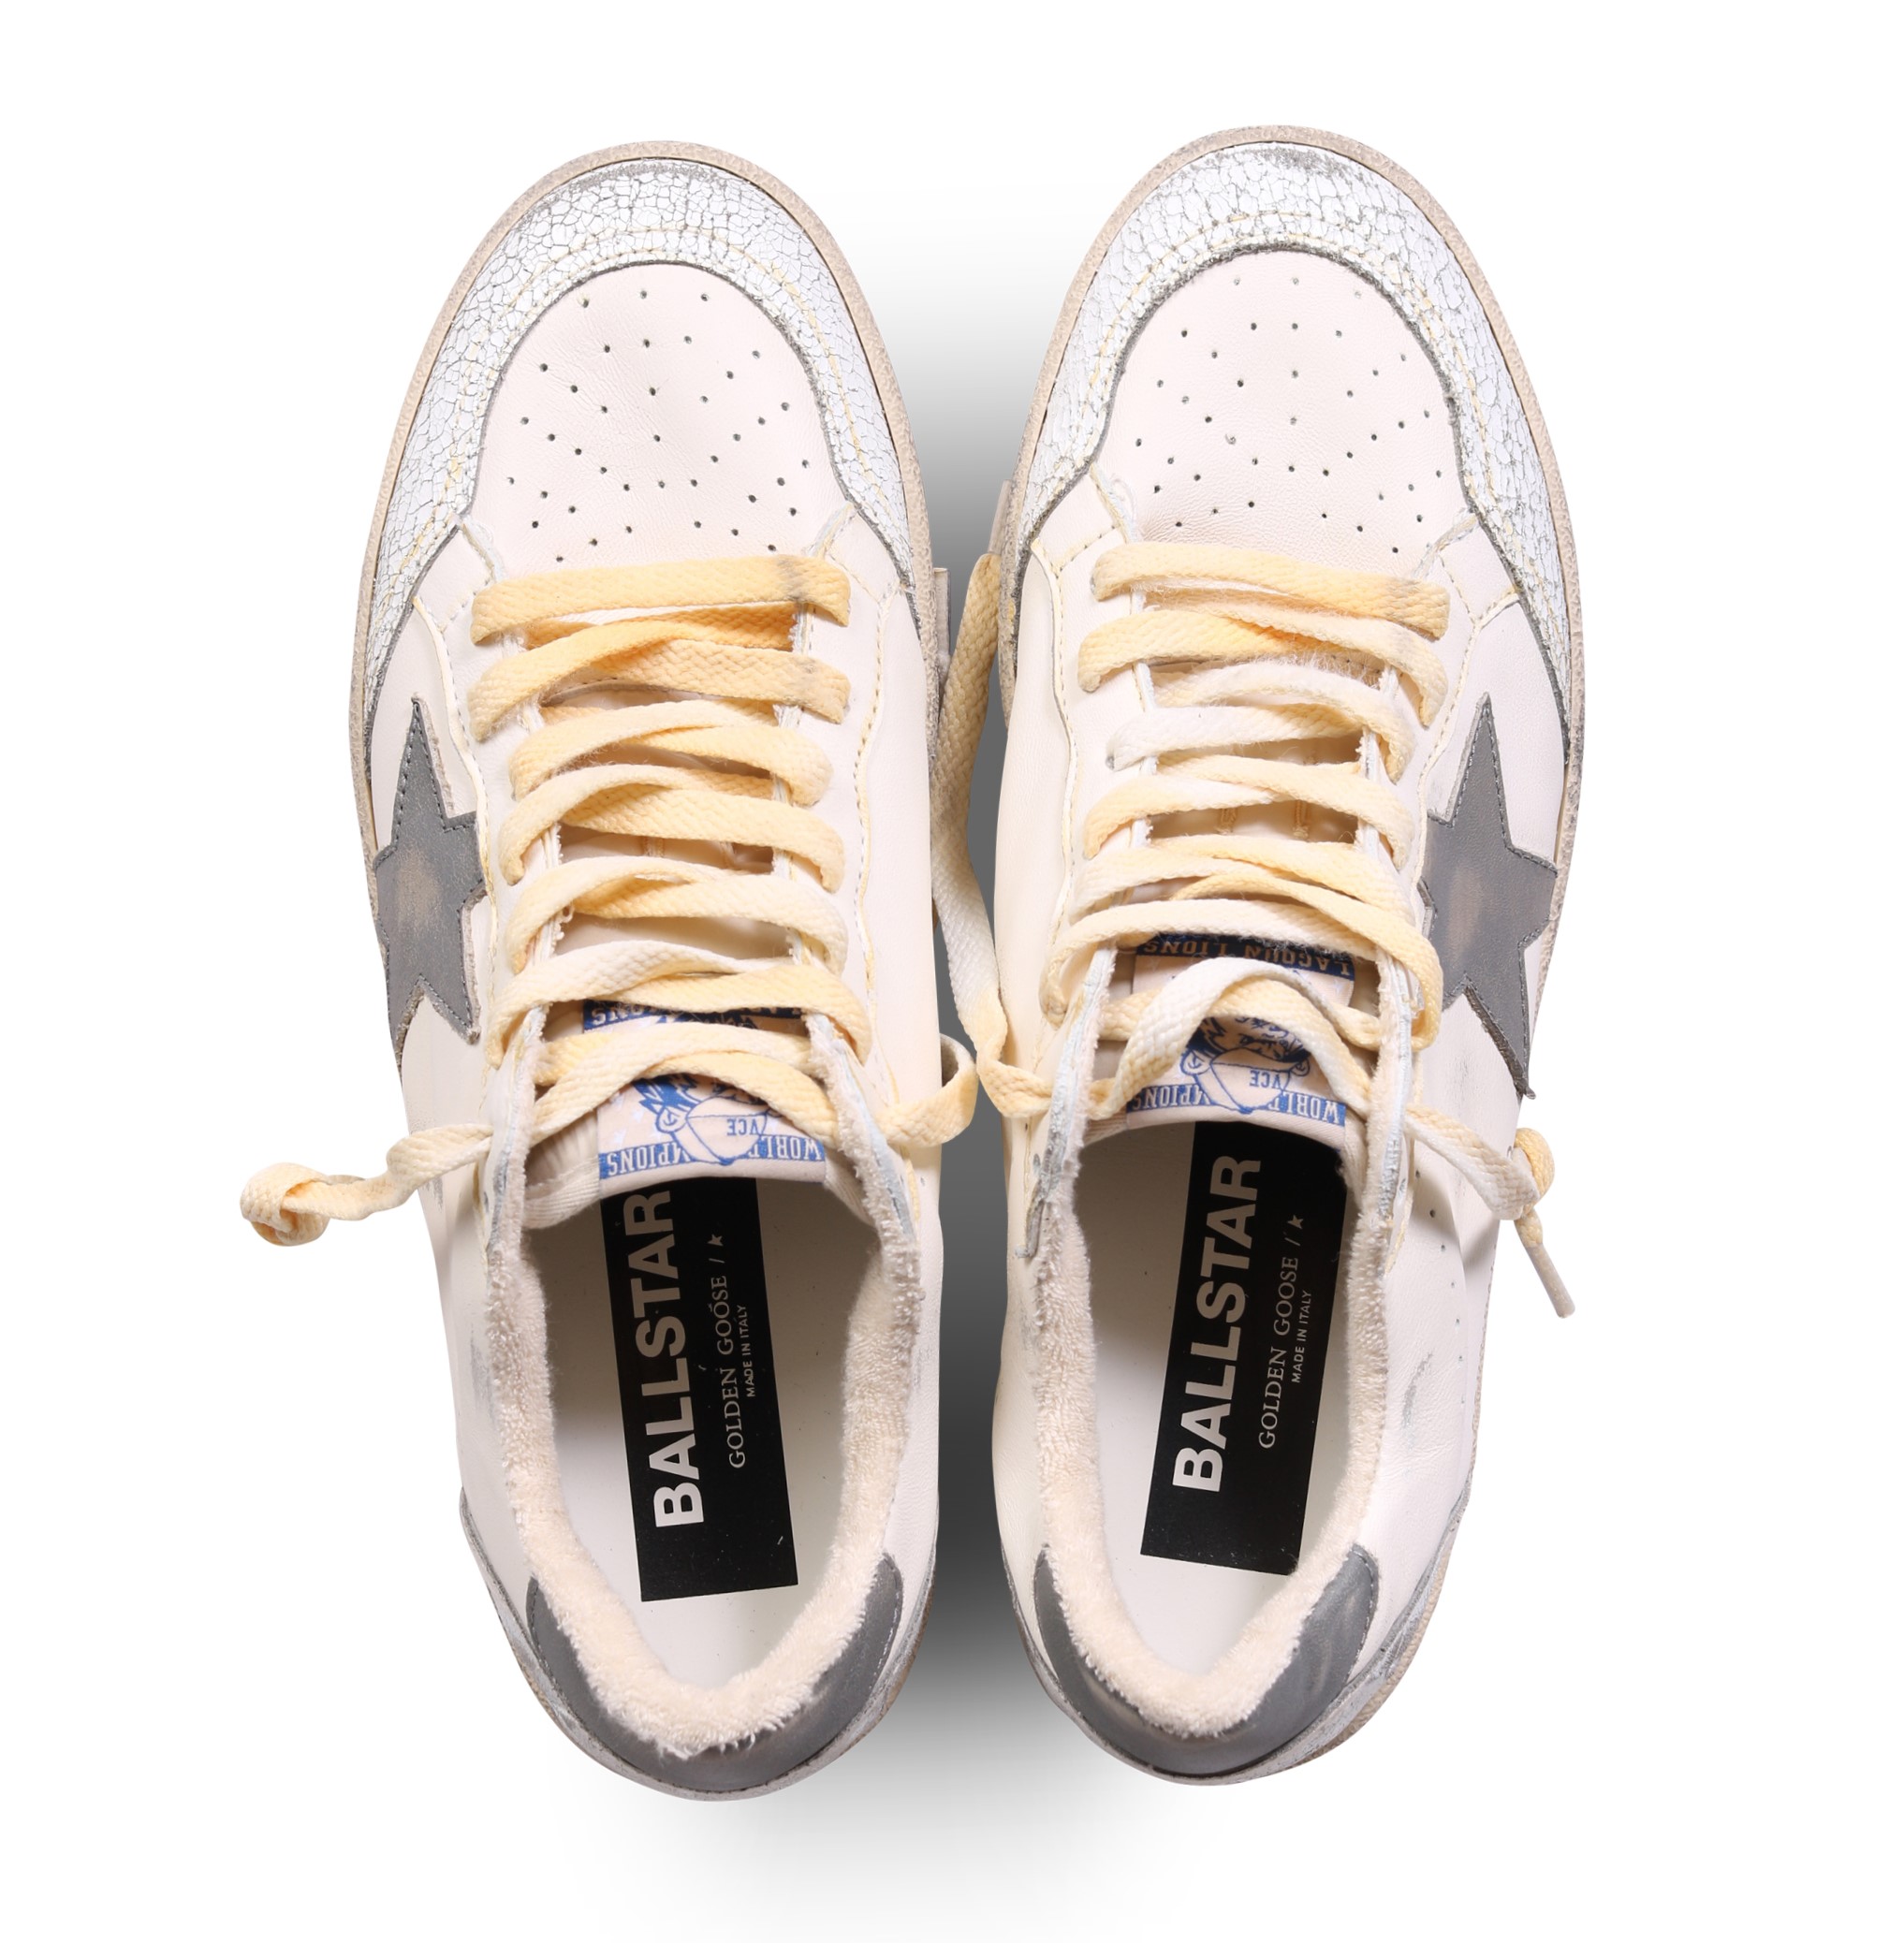 GOLDEN GOOSE Sneaker Ballstar in White/Grey 44